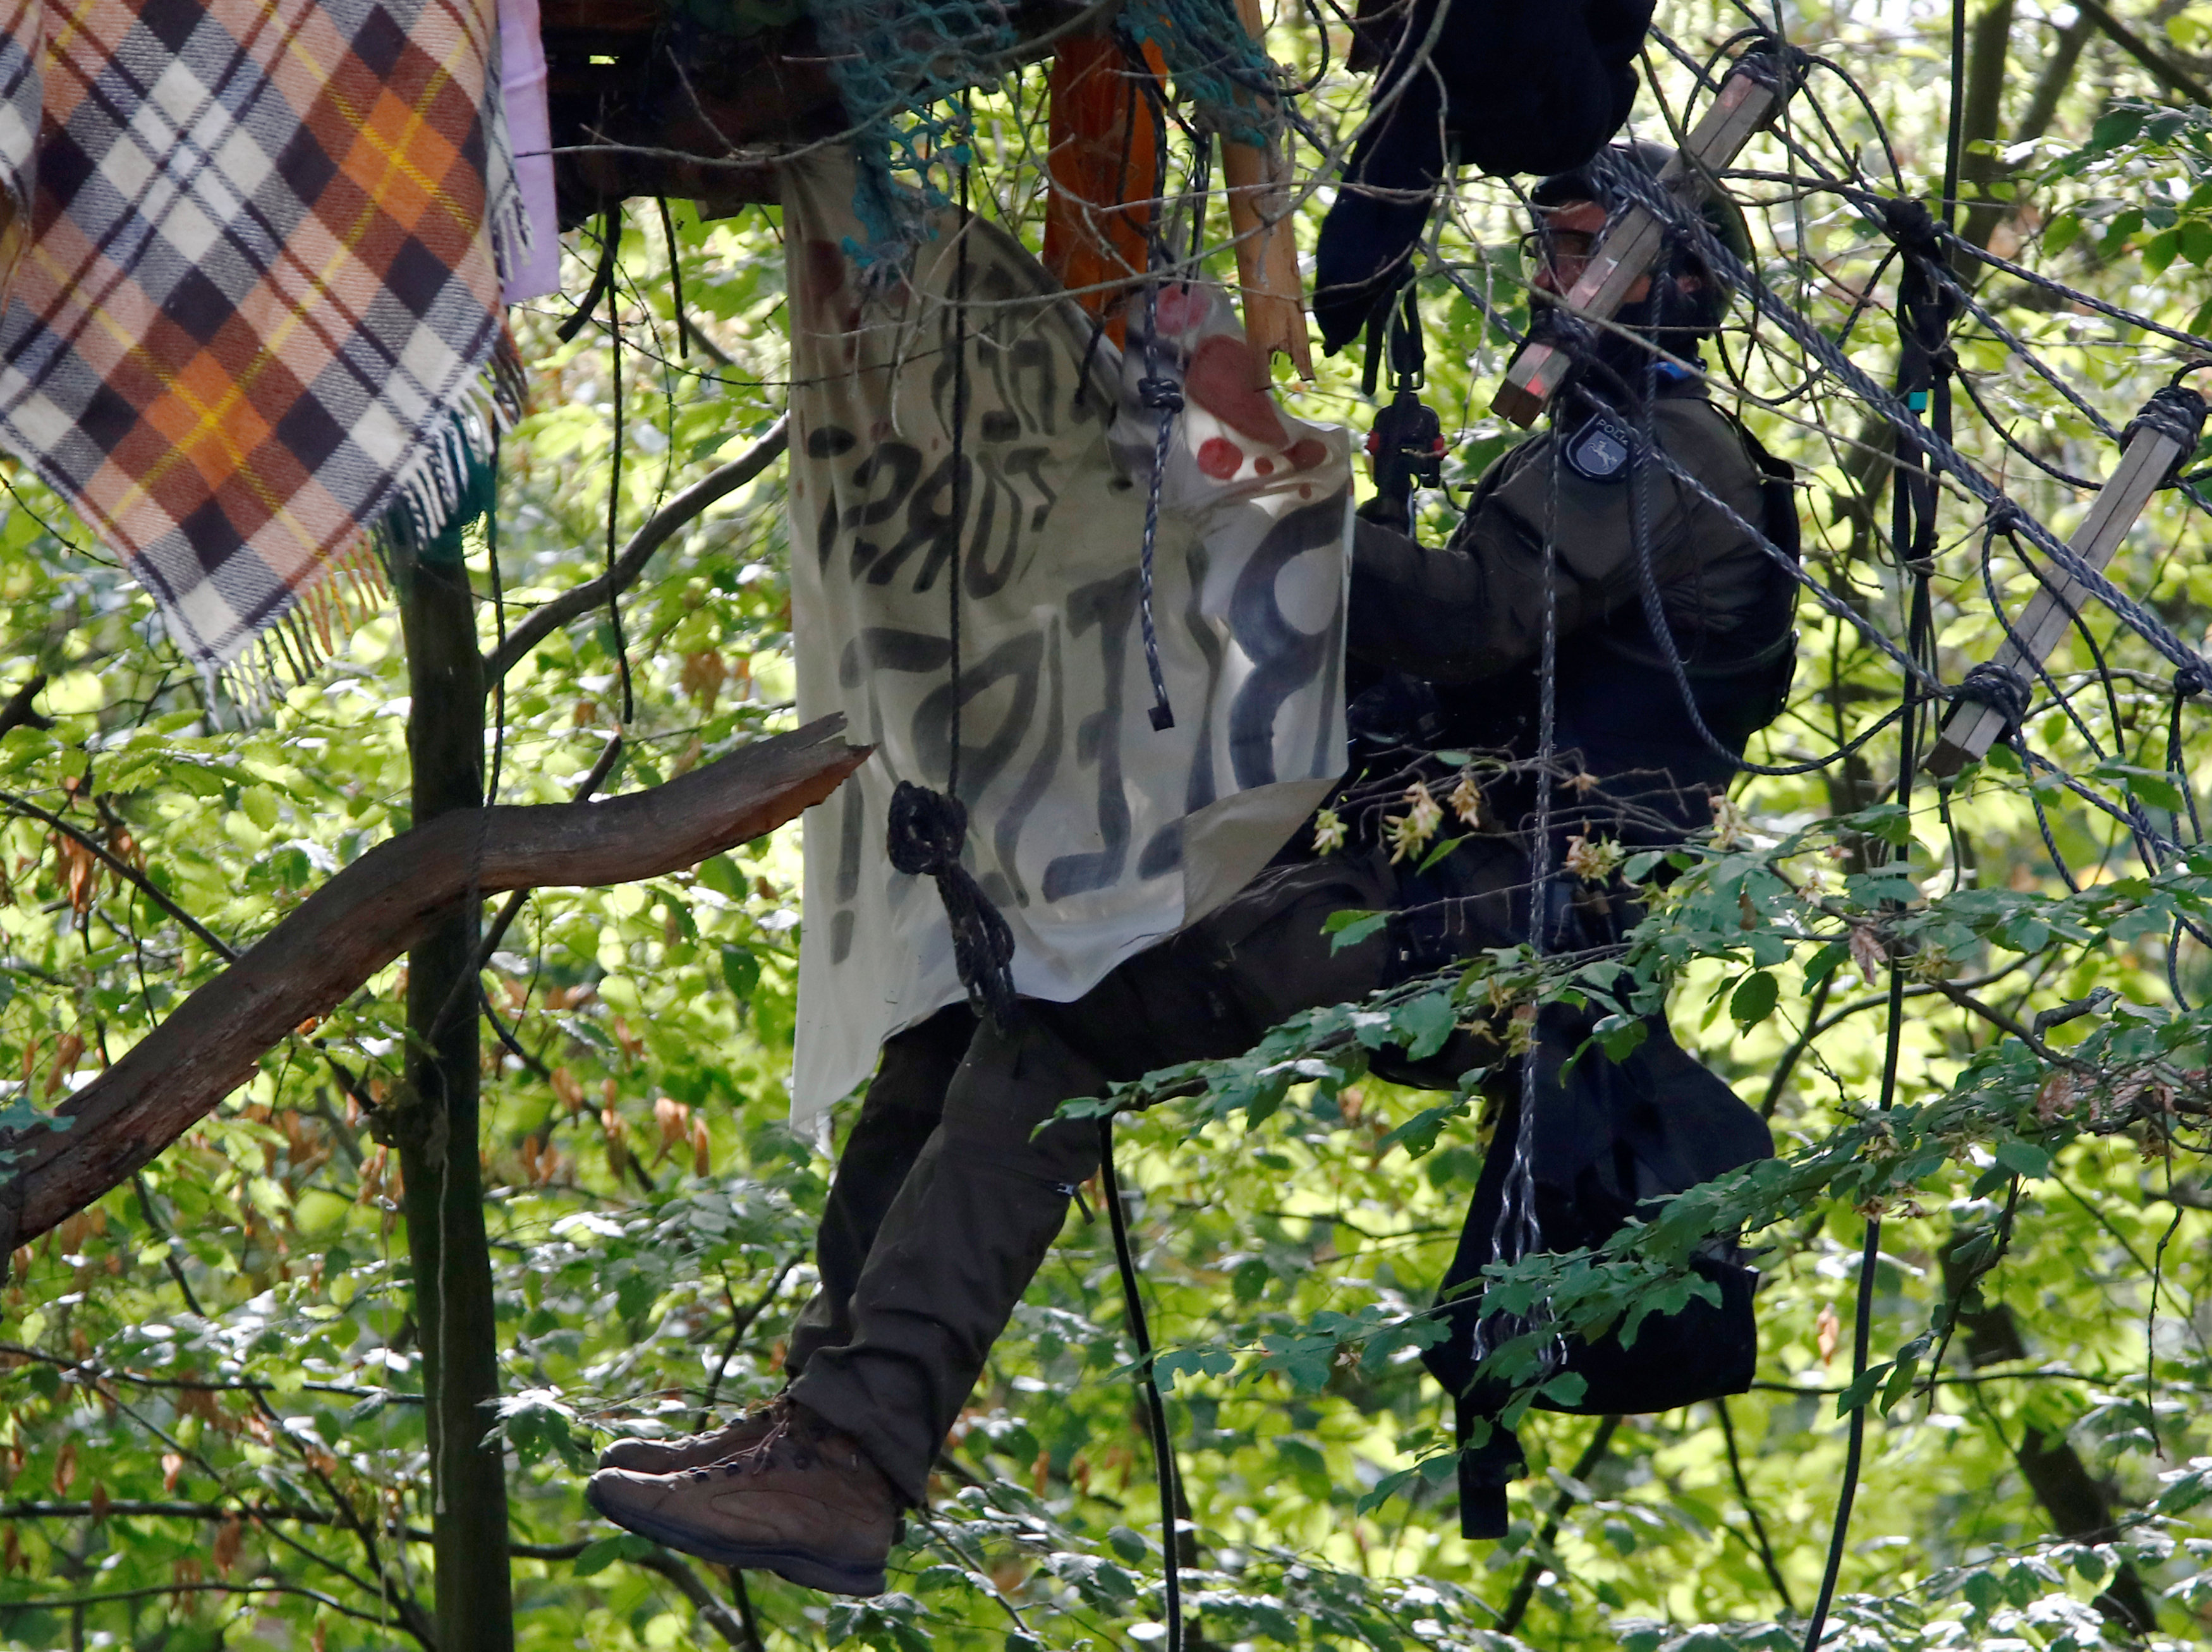 فرد من الشرطة الألمانية يتسلق فوق أحد أشجار الغابة لإزالة اللافتات